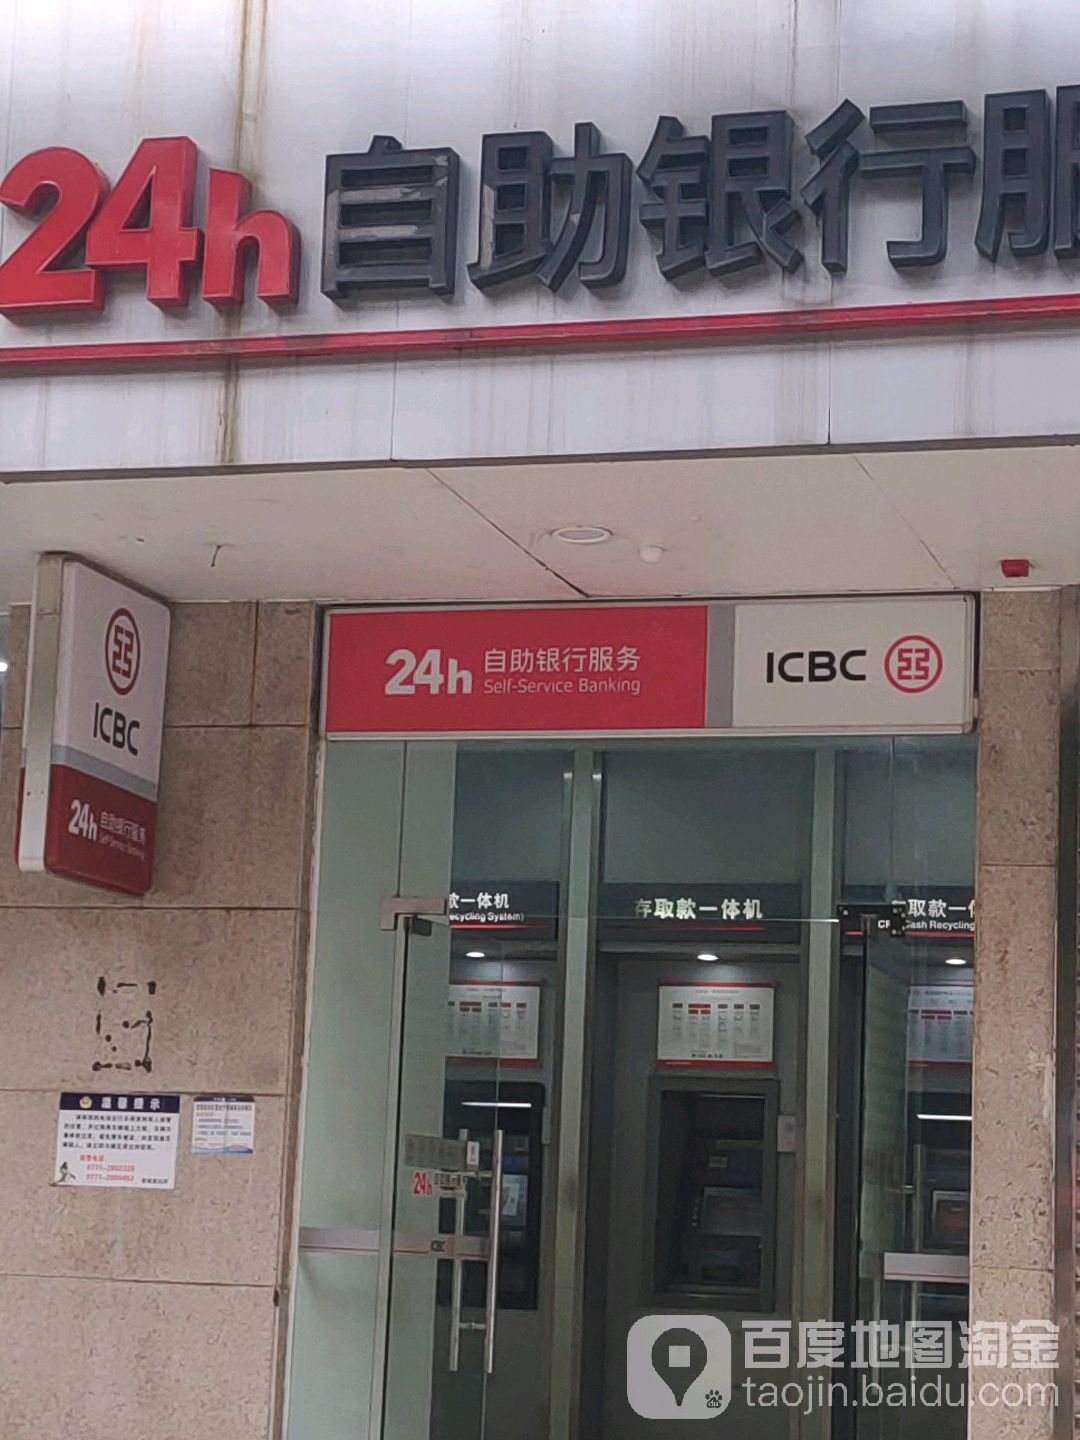 中國工商銀行24小時自助銀行服務(王府井百貨南寧店)